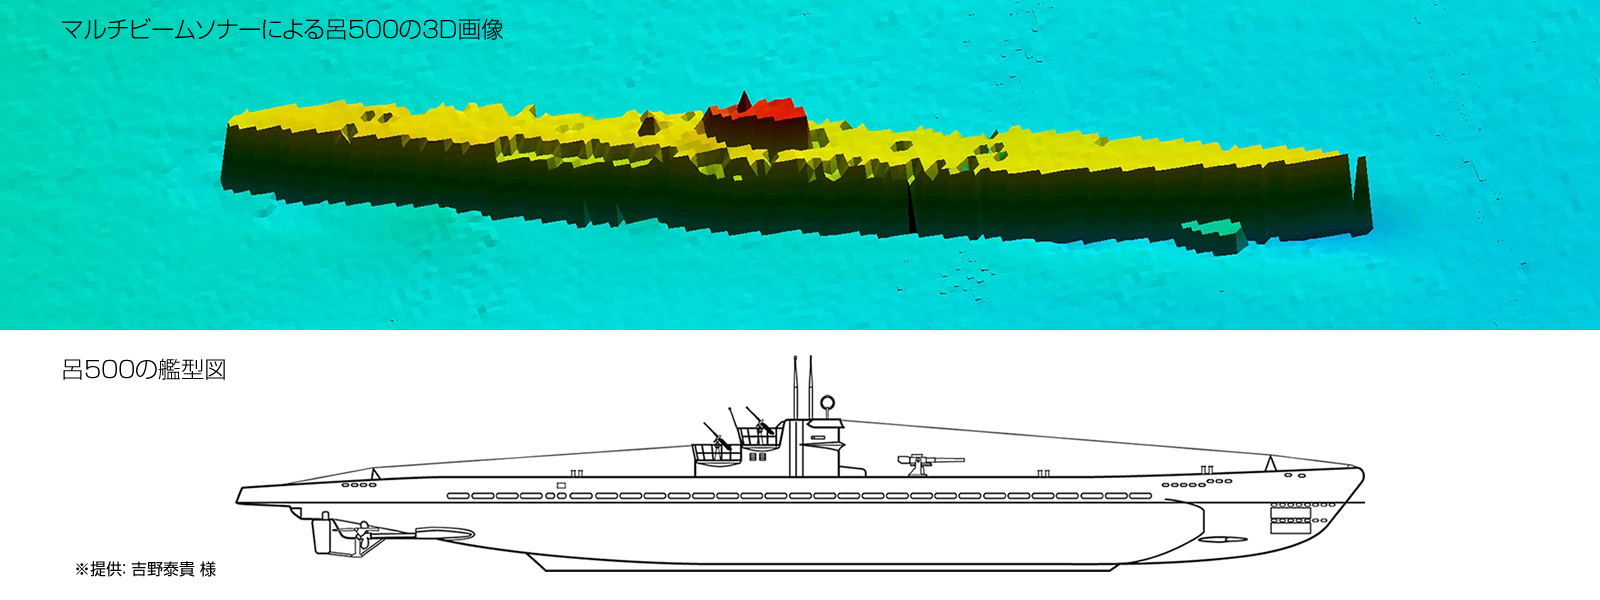 若狭湾海底に眠る潜水艦“呂500”を発見